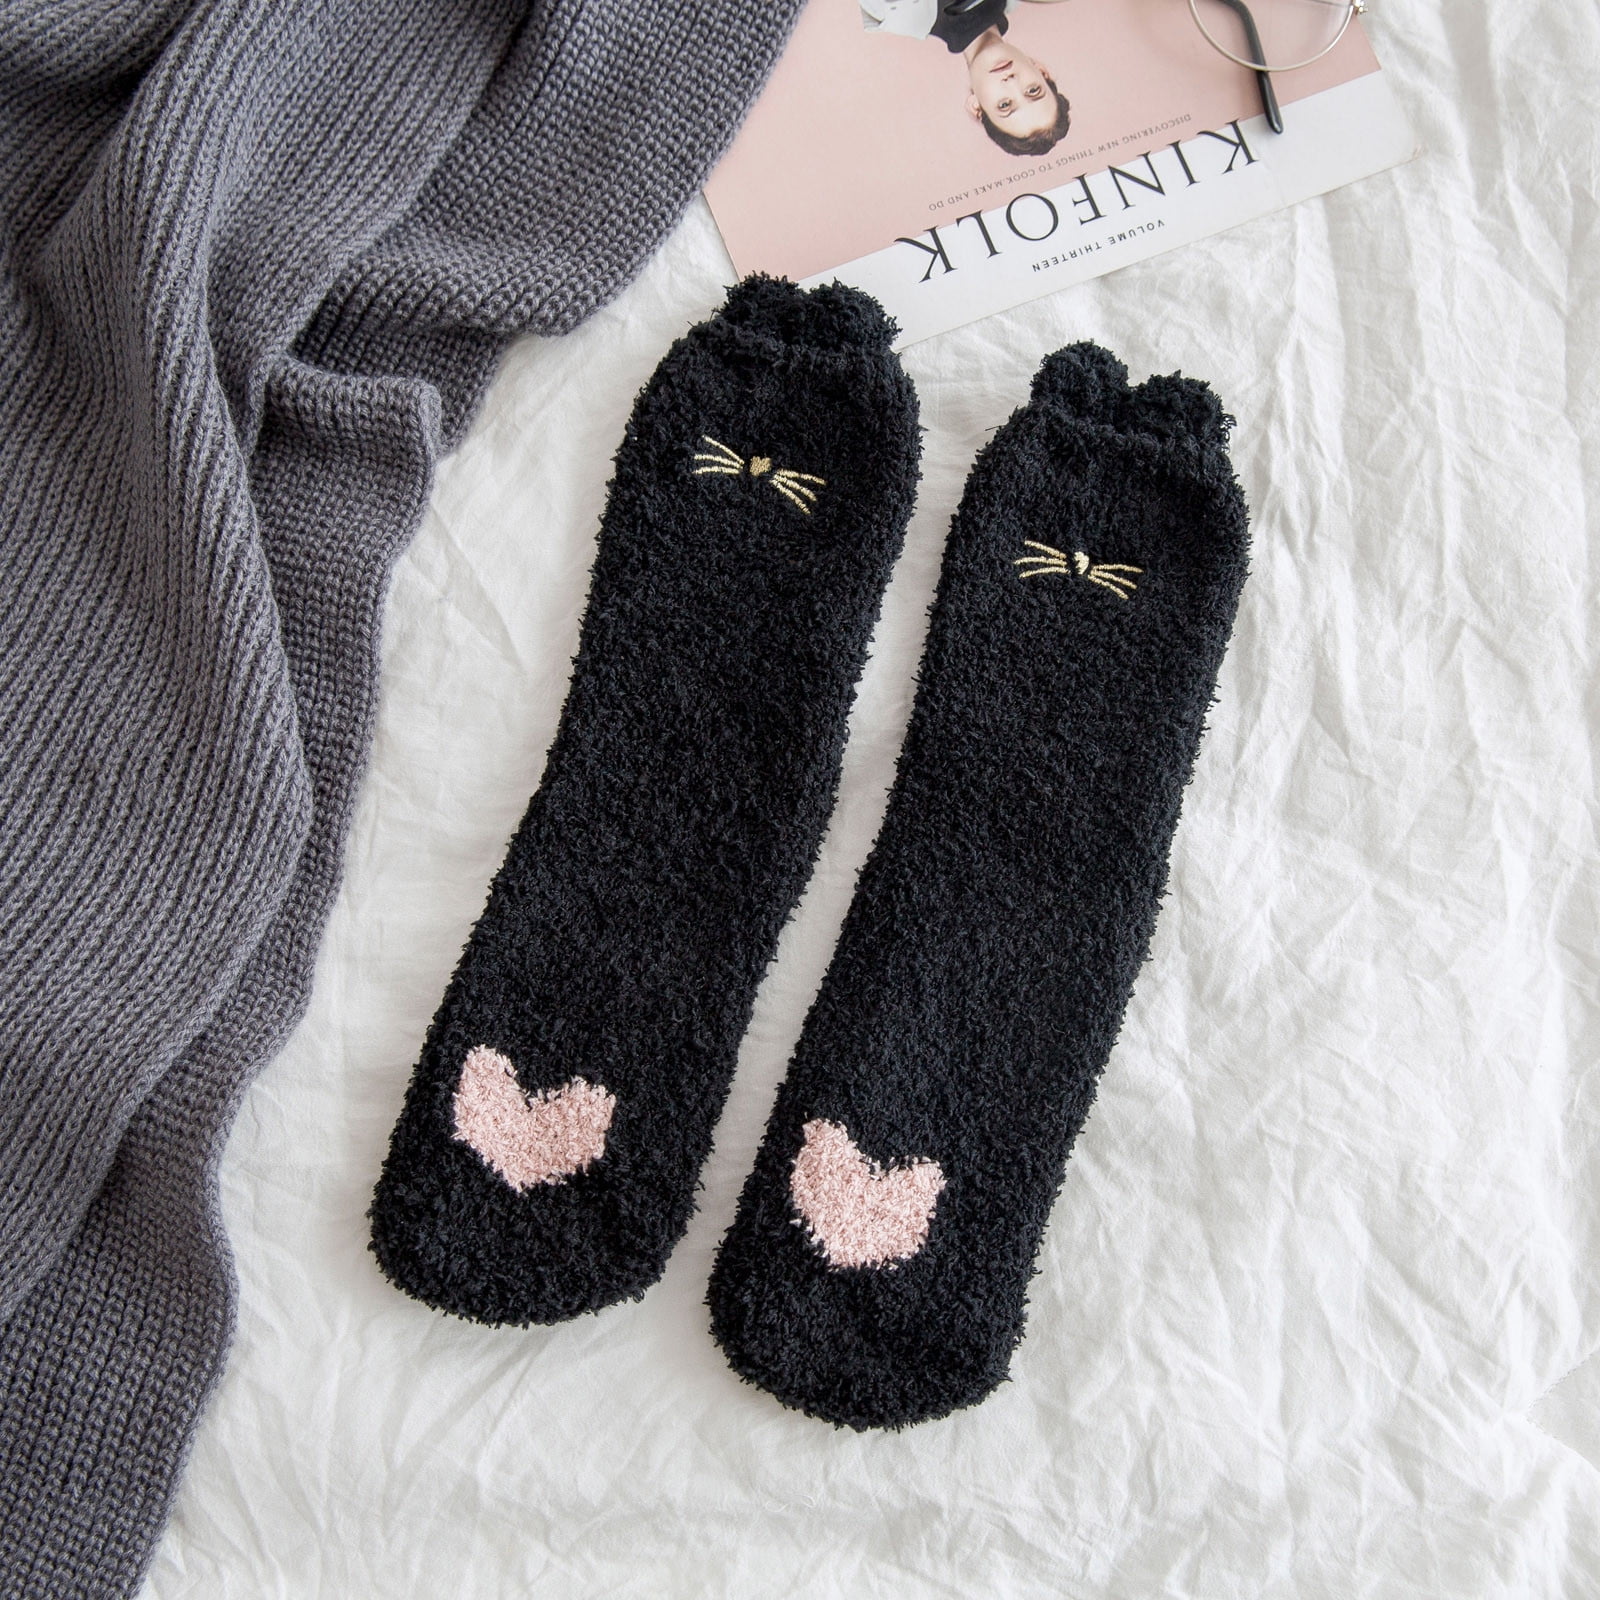 Brnmxoke Women's Cat Socks Paw Fuzzy Socks Coral Fleece Sleeping Winter ...